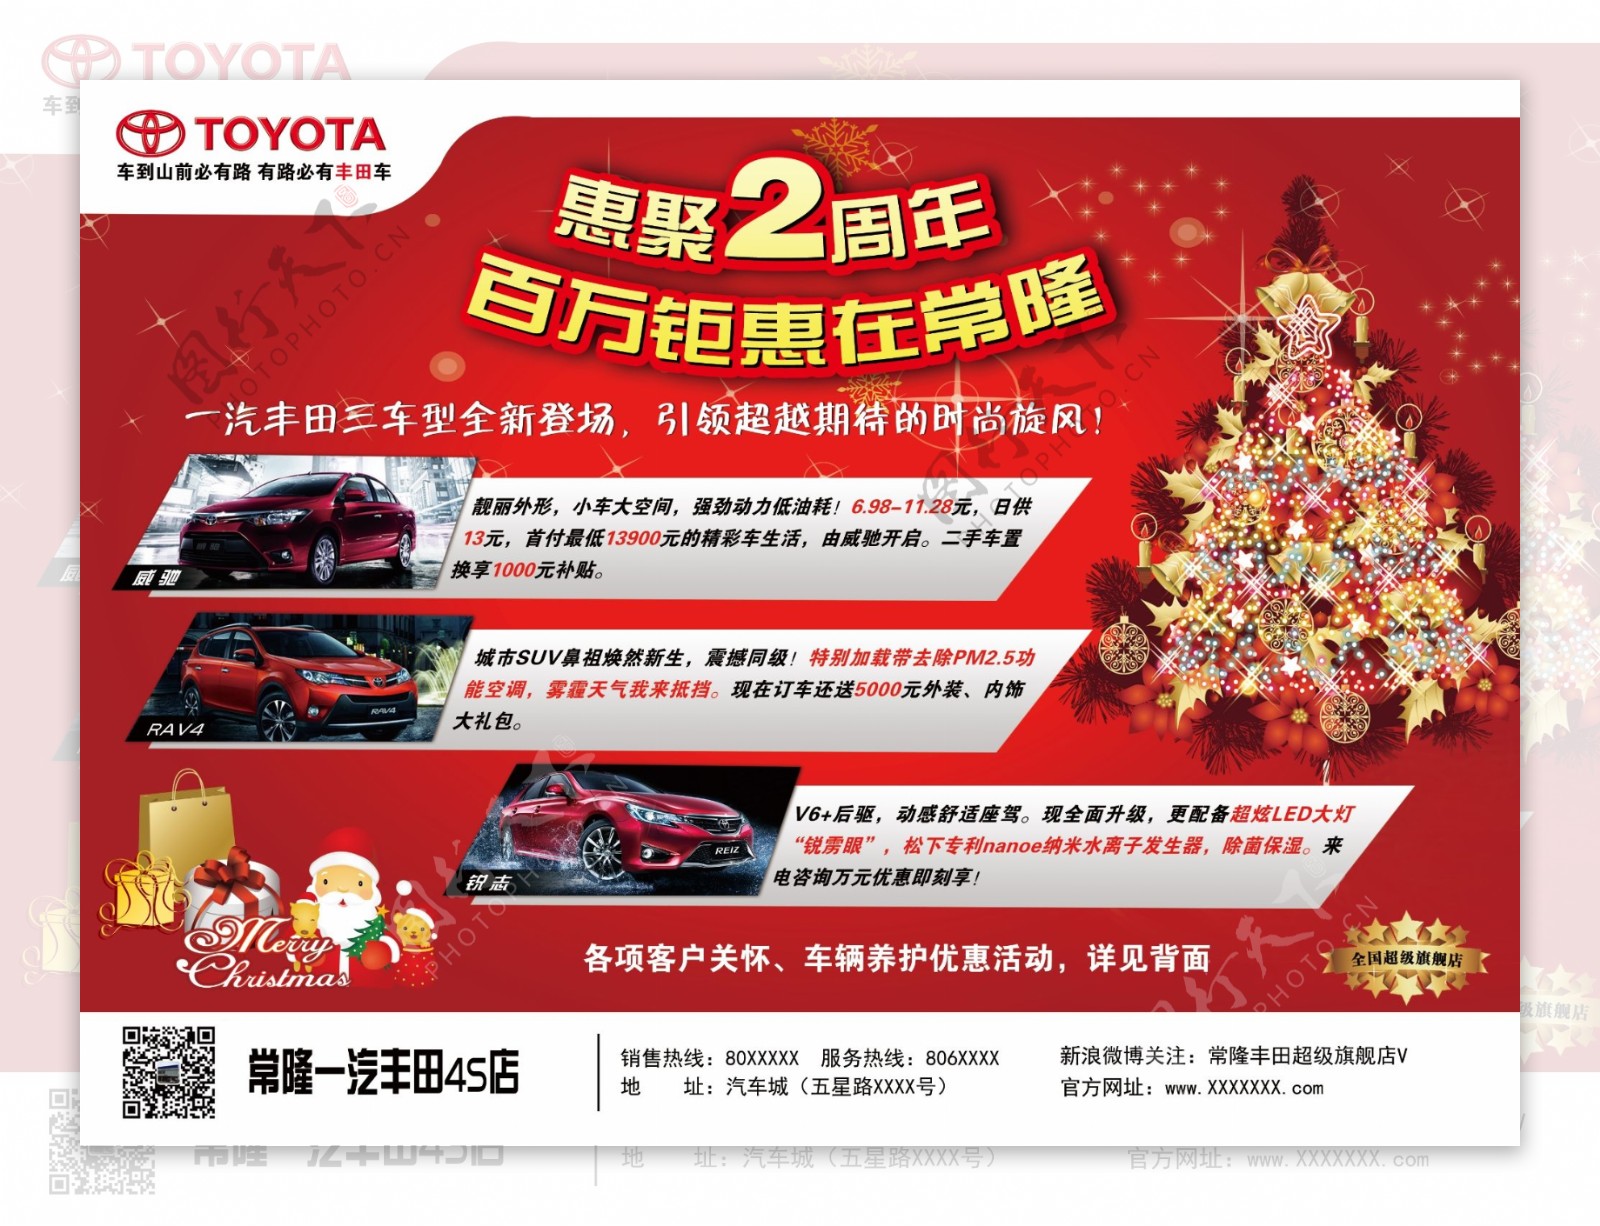 圣诞节汽车广告宣传画面